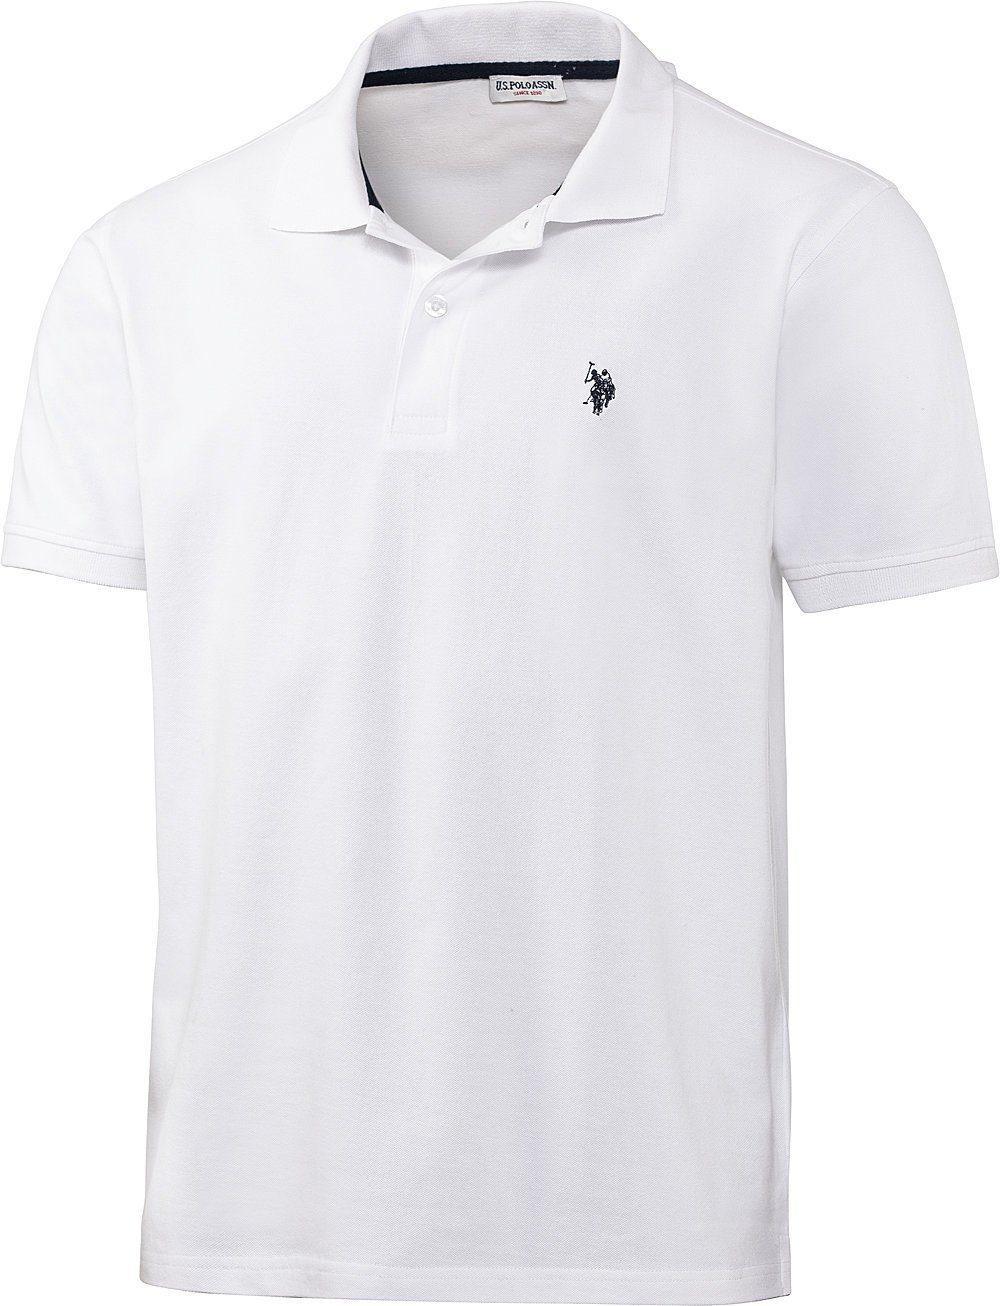 U.S. Polo Assn Poloshirt schöne Piqué-Struktur und Logo-Stick im Kontrastton weiß